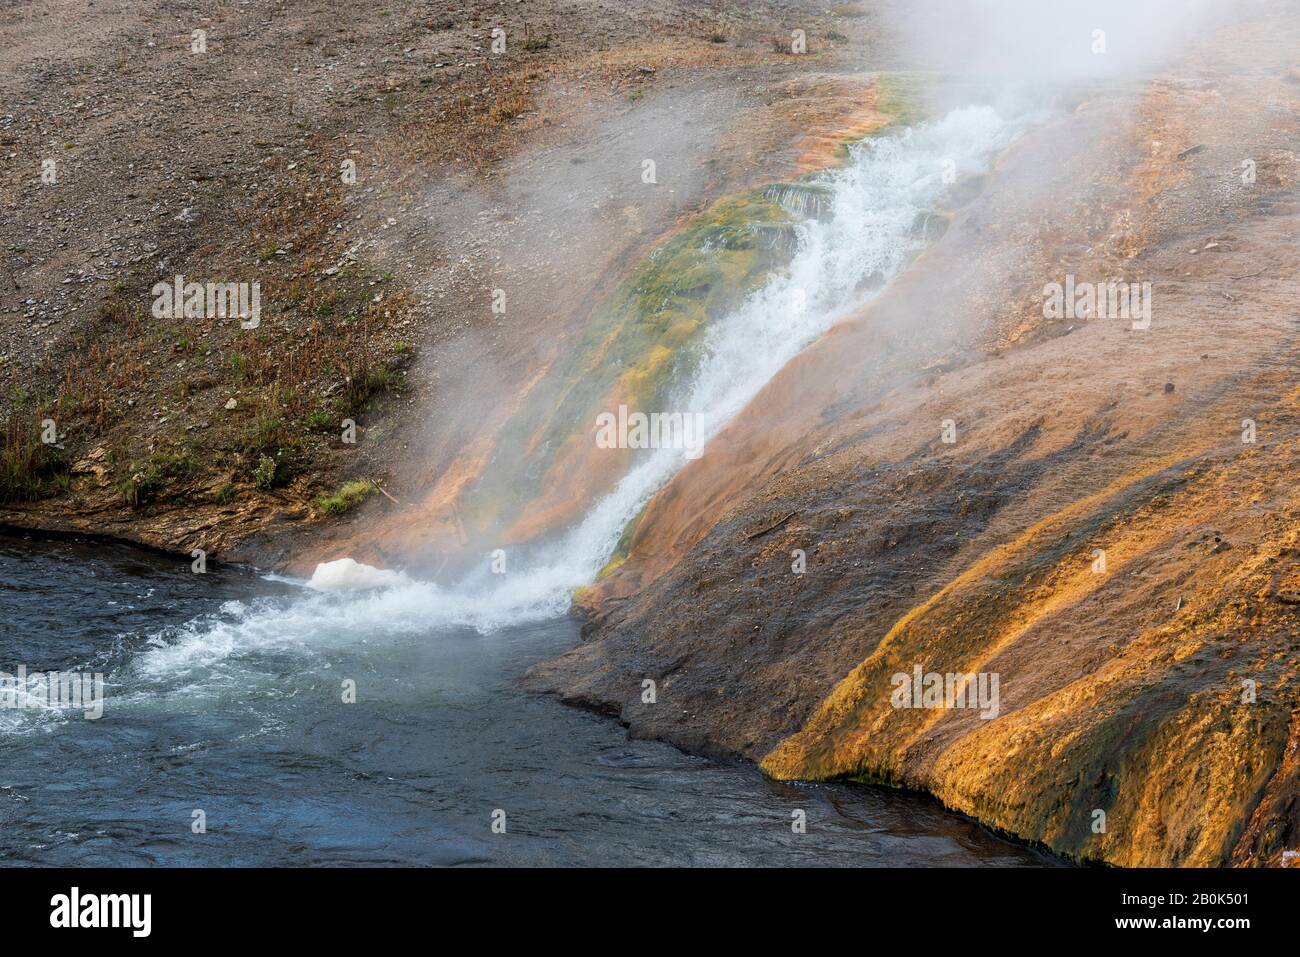 Heißes, dampfendes Wasser fließt an einem grünen, orangefarbenen und braunen Hang entlang in einem kalten, blauen Fluss. Stockfoto